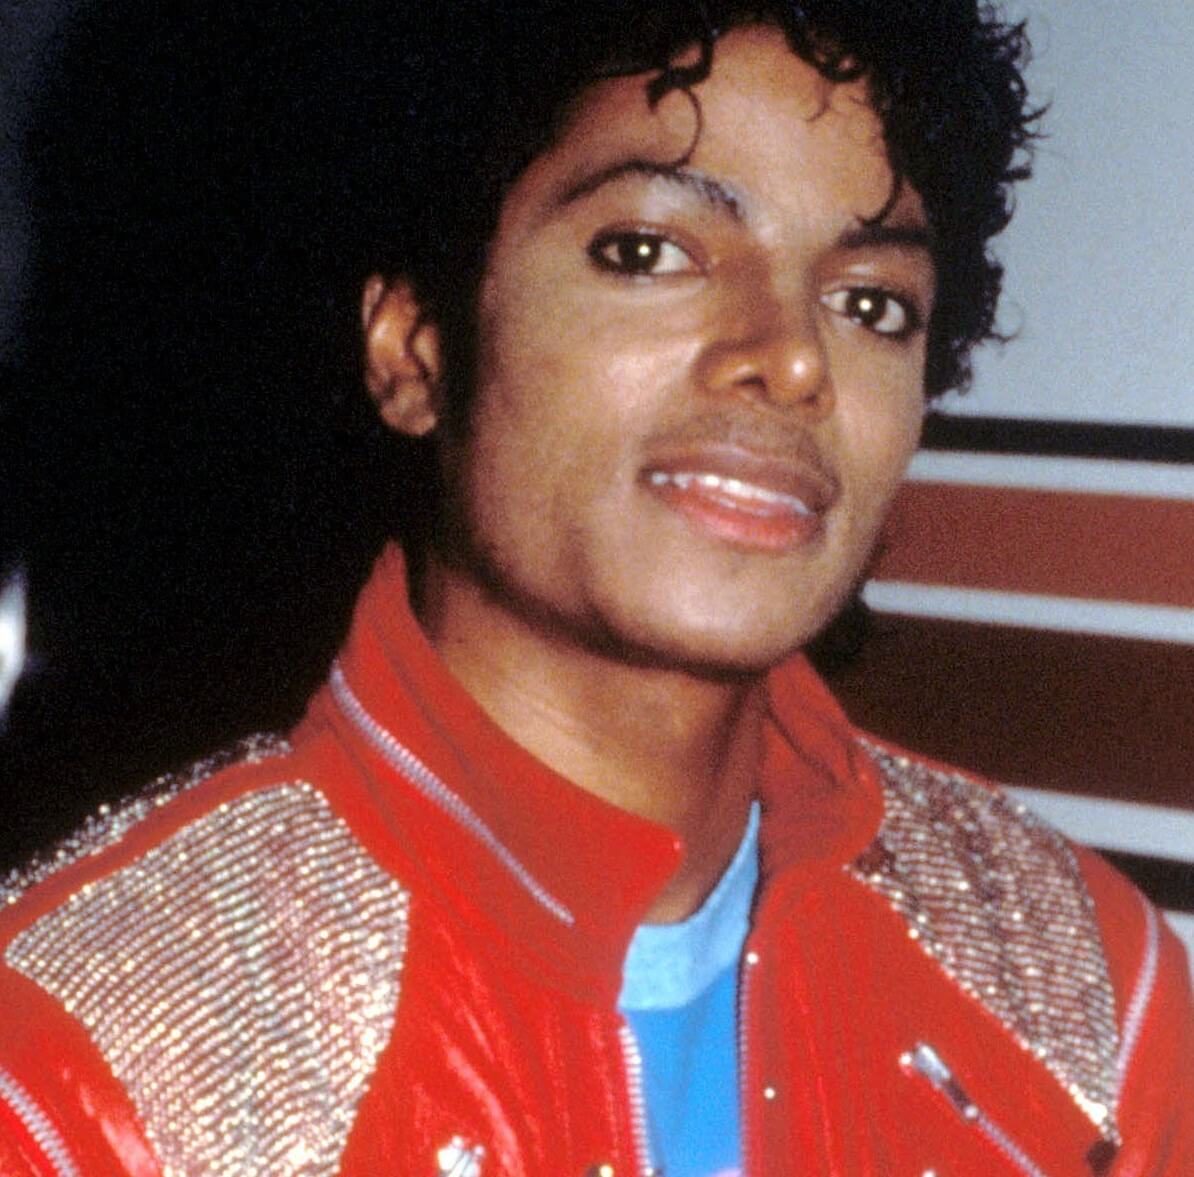 "Man in the Mirror" singer Michael Jackson wearing orange